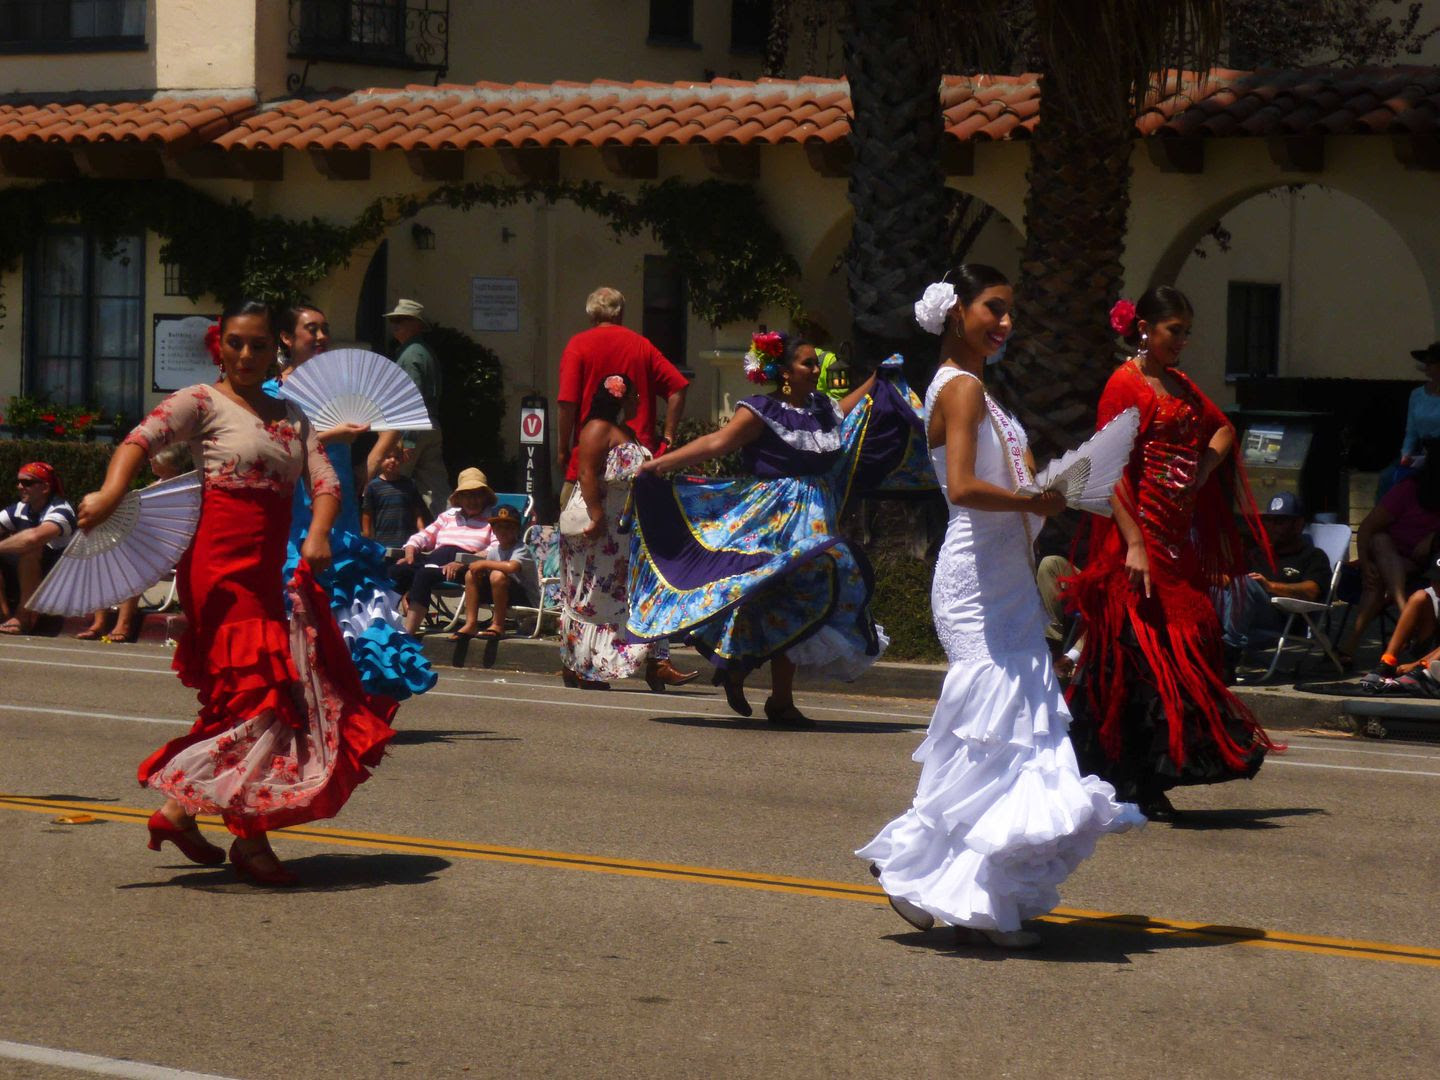 Avoiding Regret Photo Essay ¡Viva la Fiesta! Santa Barbara's